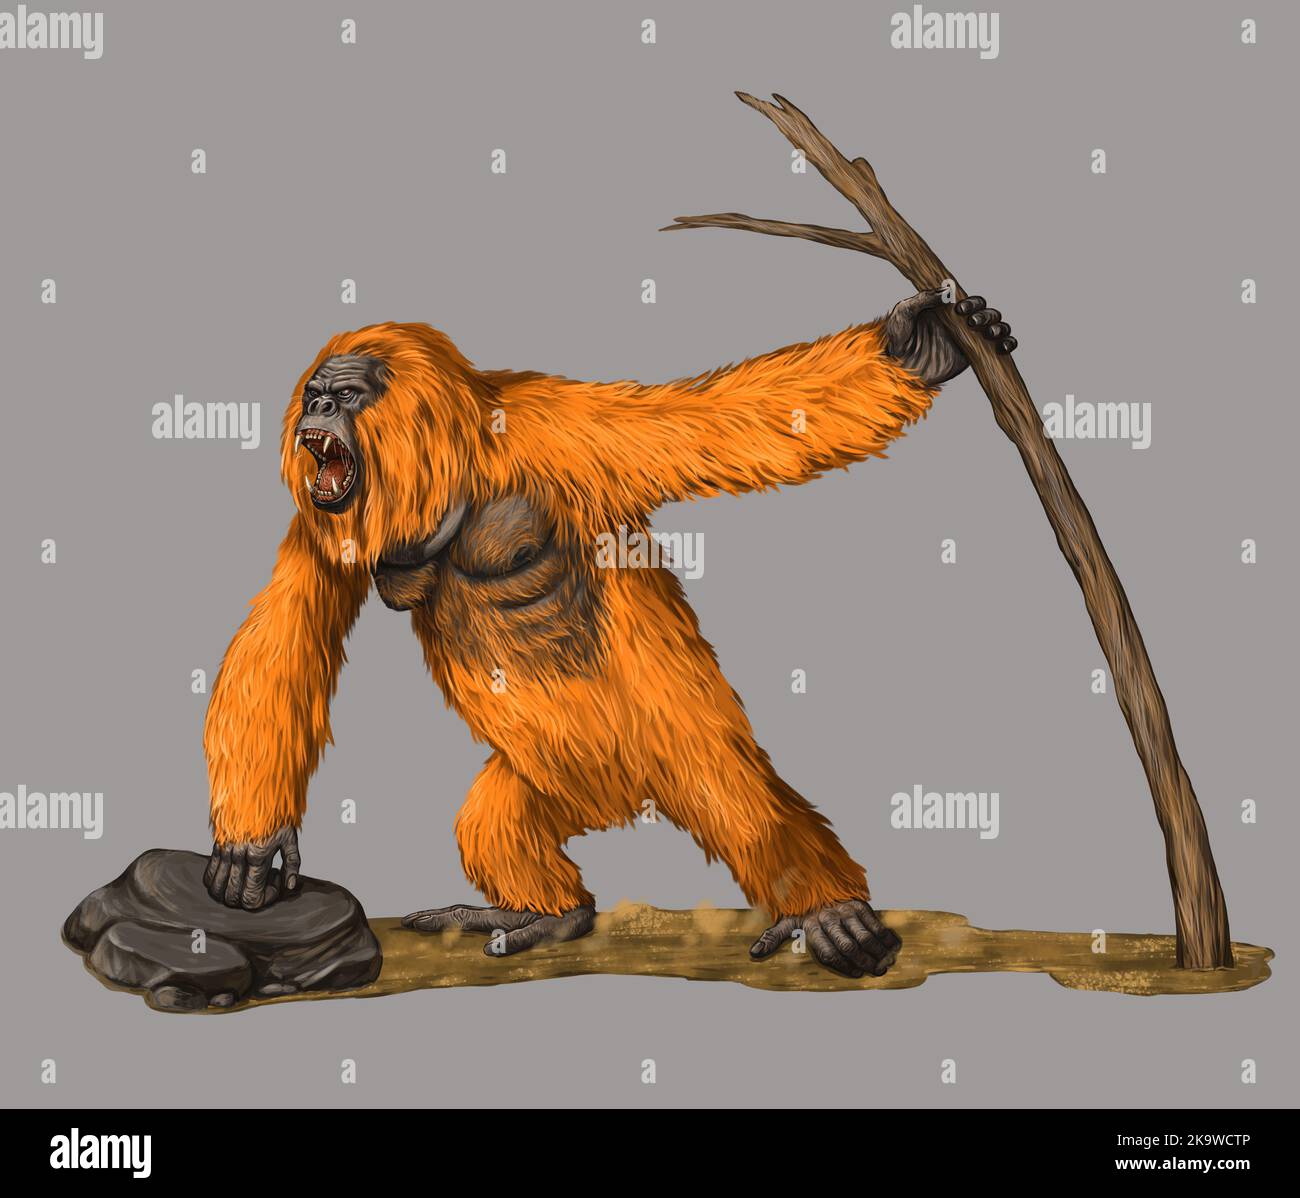 Primates préhistoriques gigantopithecus. Orangutan géant. Illustration des ancêtres des humains. Banque D'Images